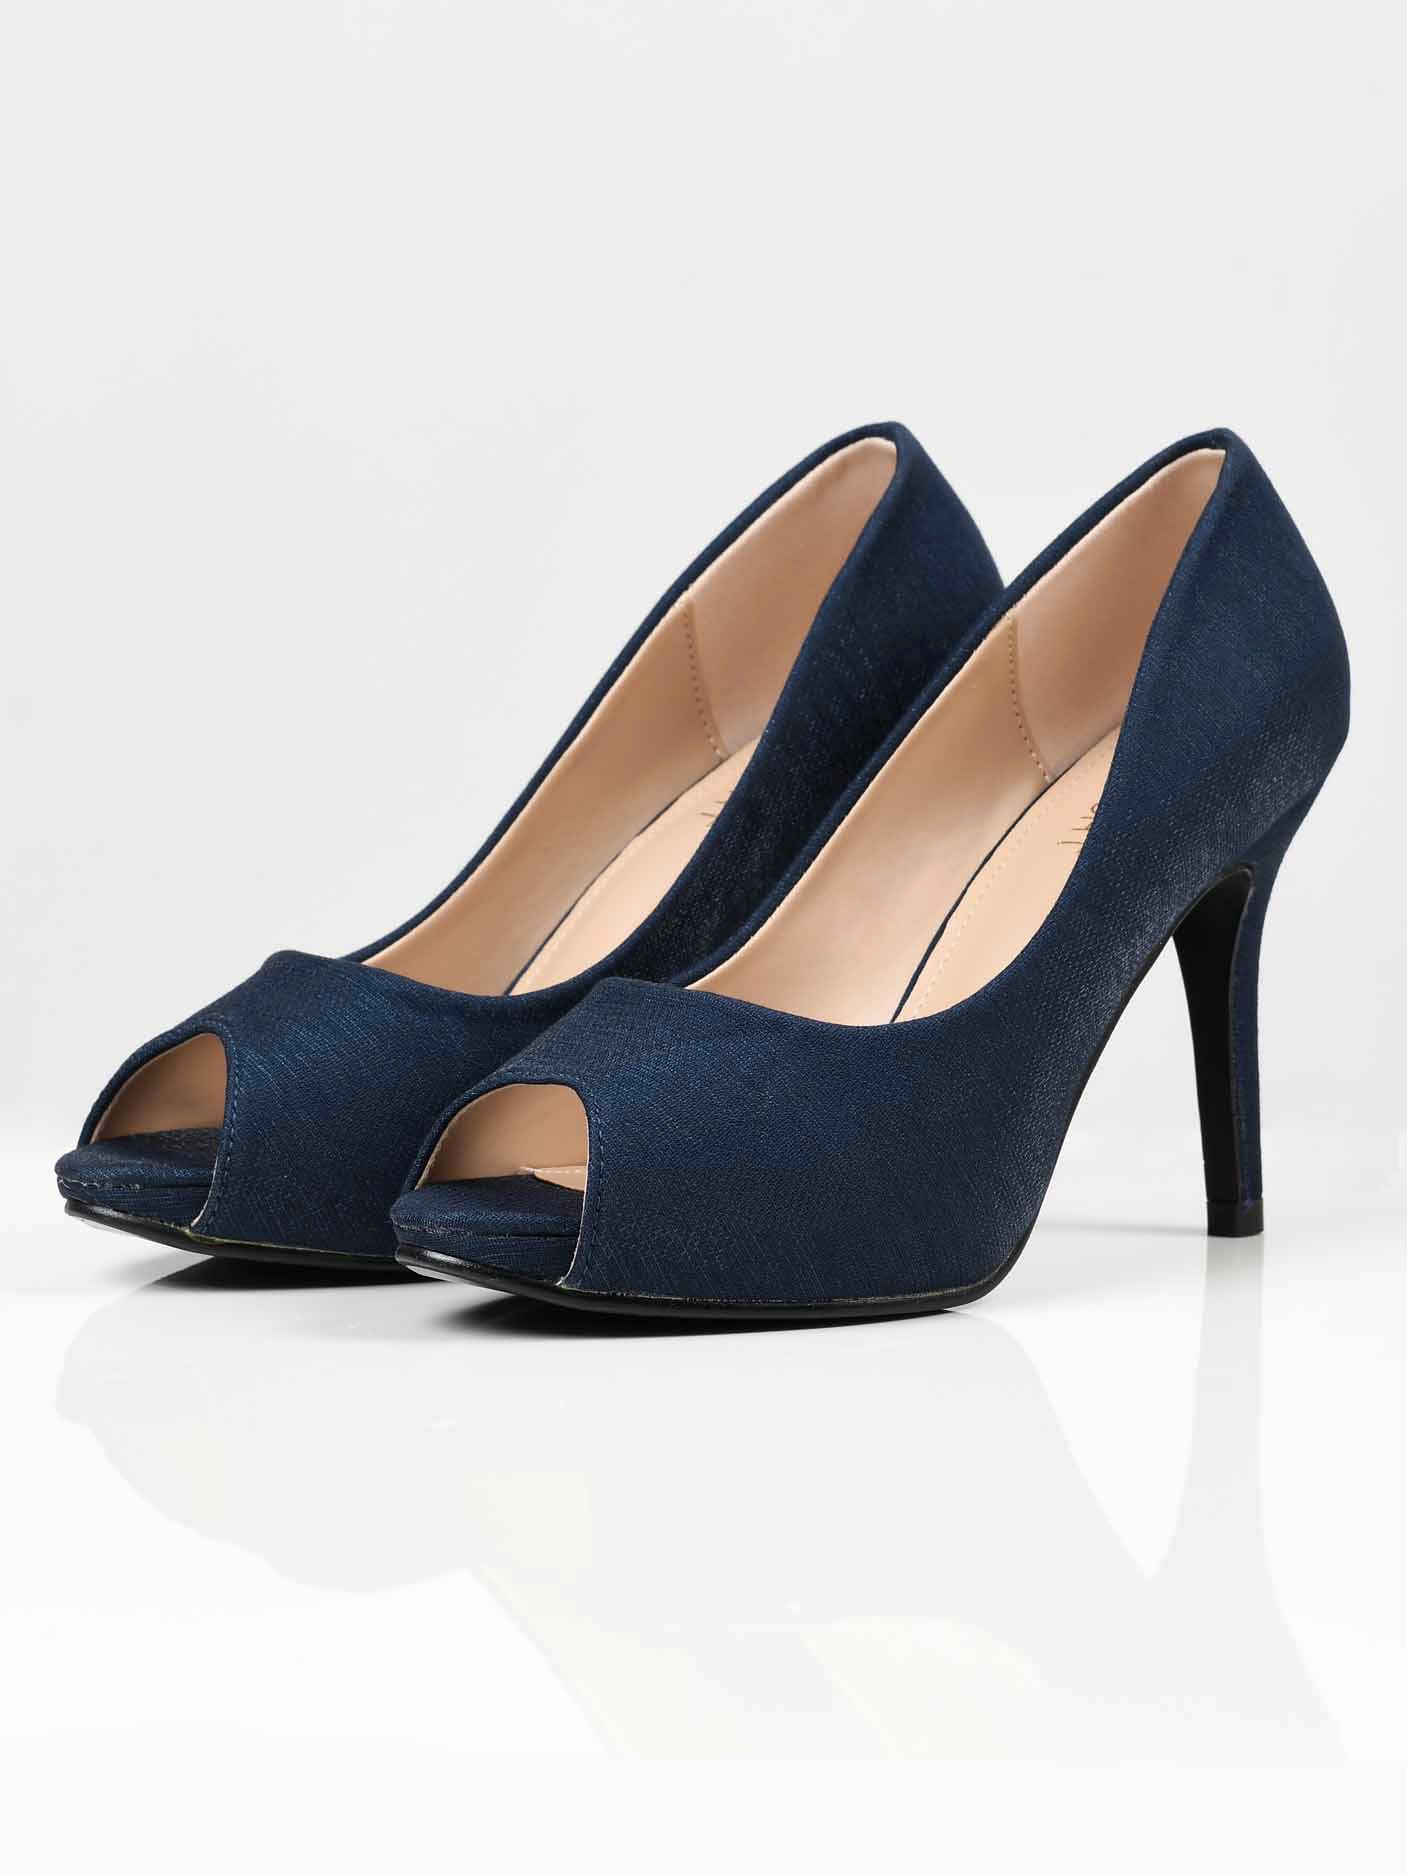 Shimmery Heels - Navy Blue